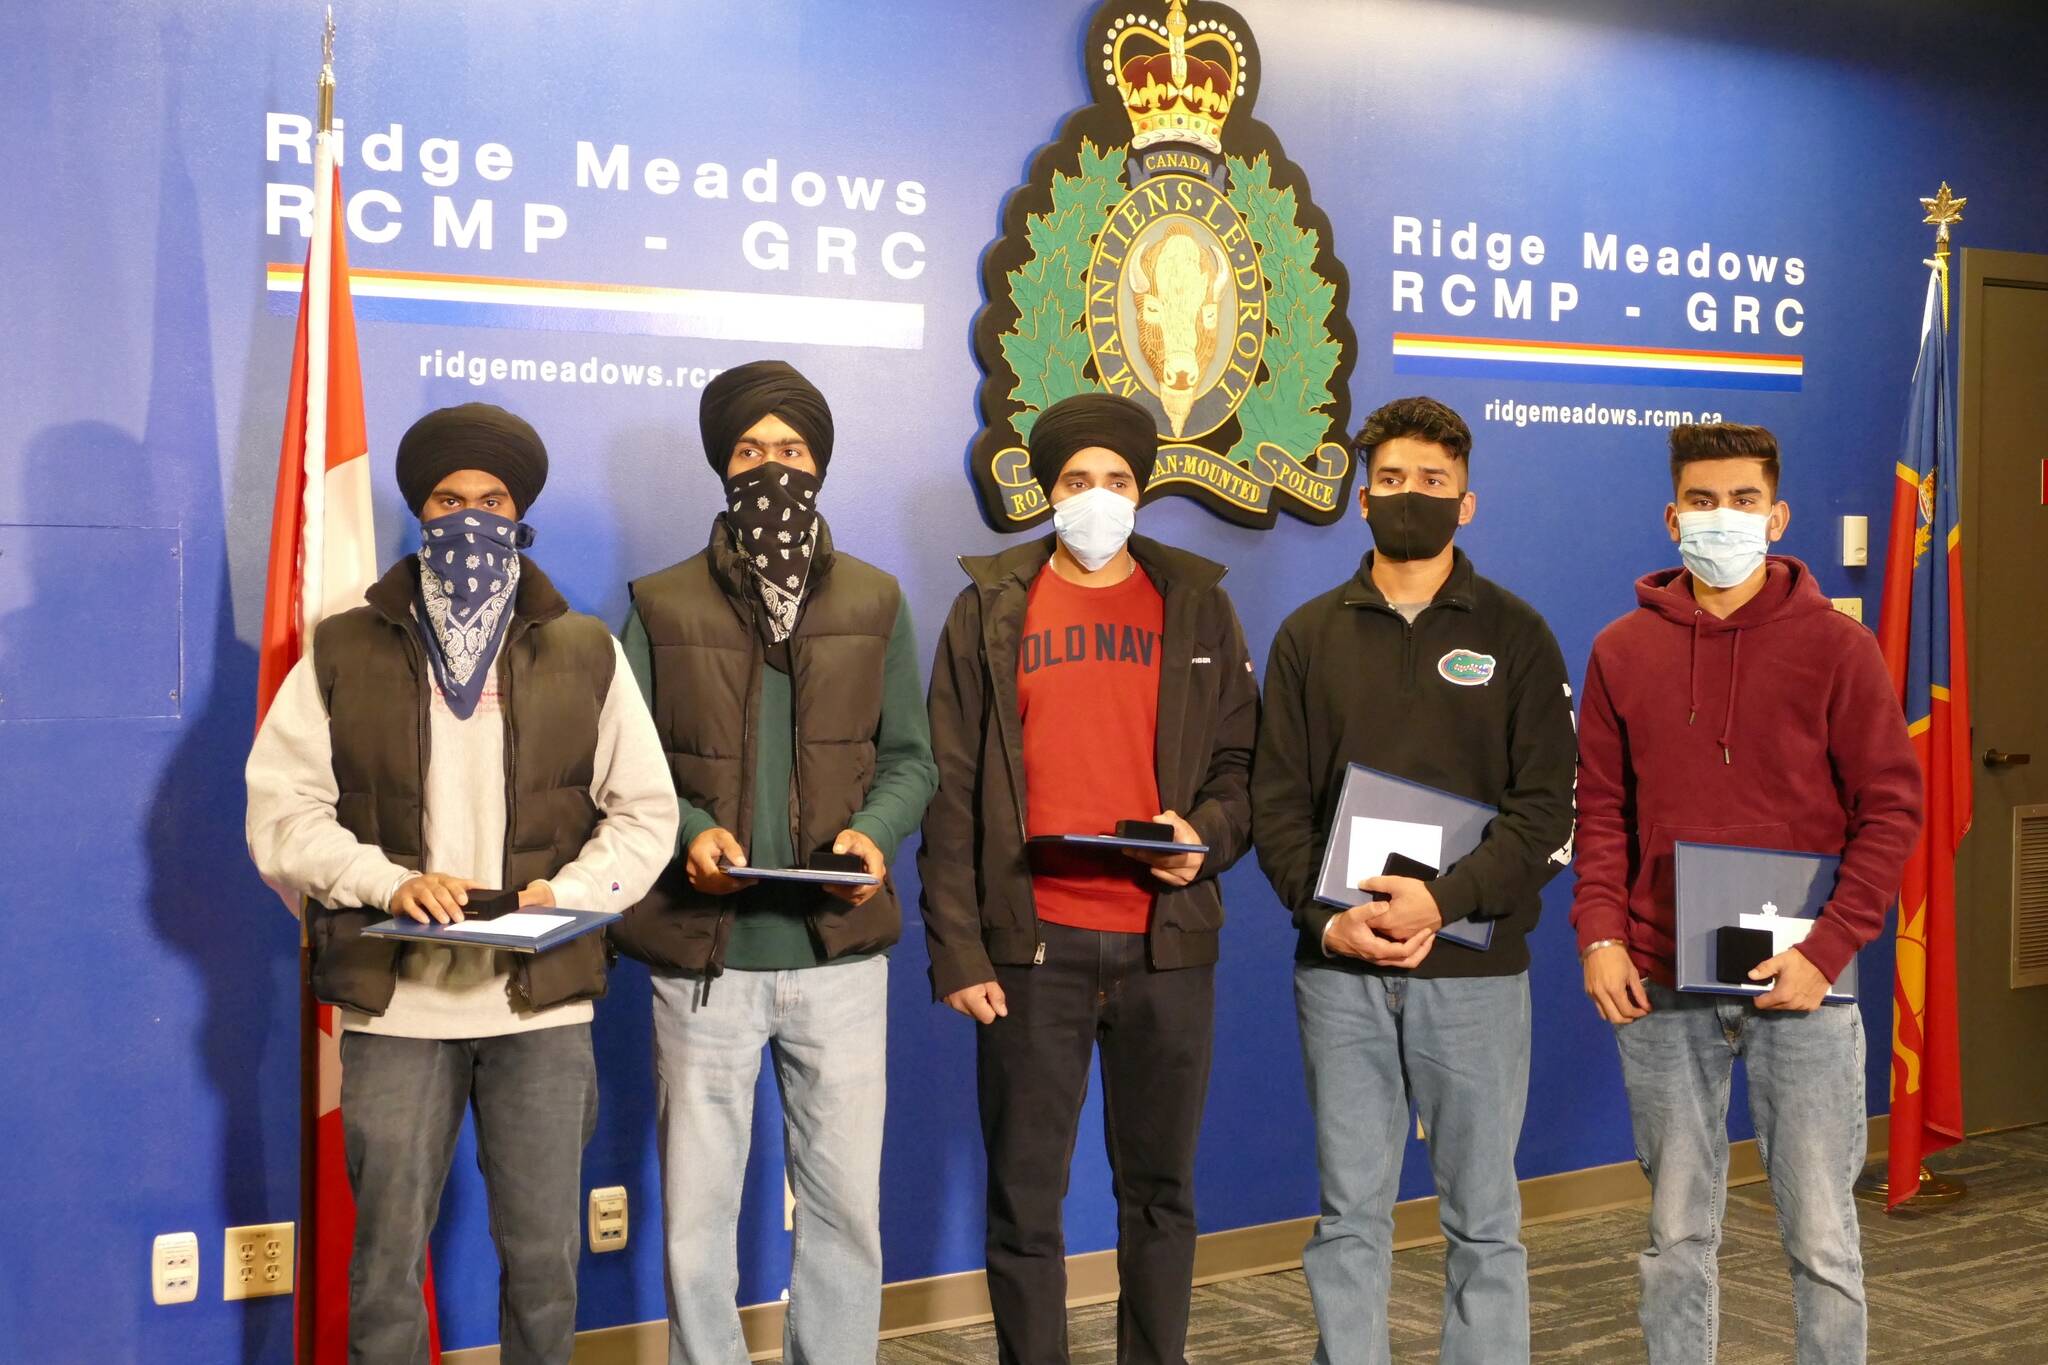 Gagandeep Singh, Gurpreet Singh, Kulinder Singh, Arvindjeet Singh, Ajay Kumar honoured by the Ridge Meadows RCMP. (Priyanka Ketkar/The News)